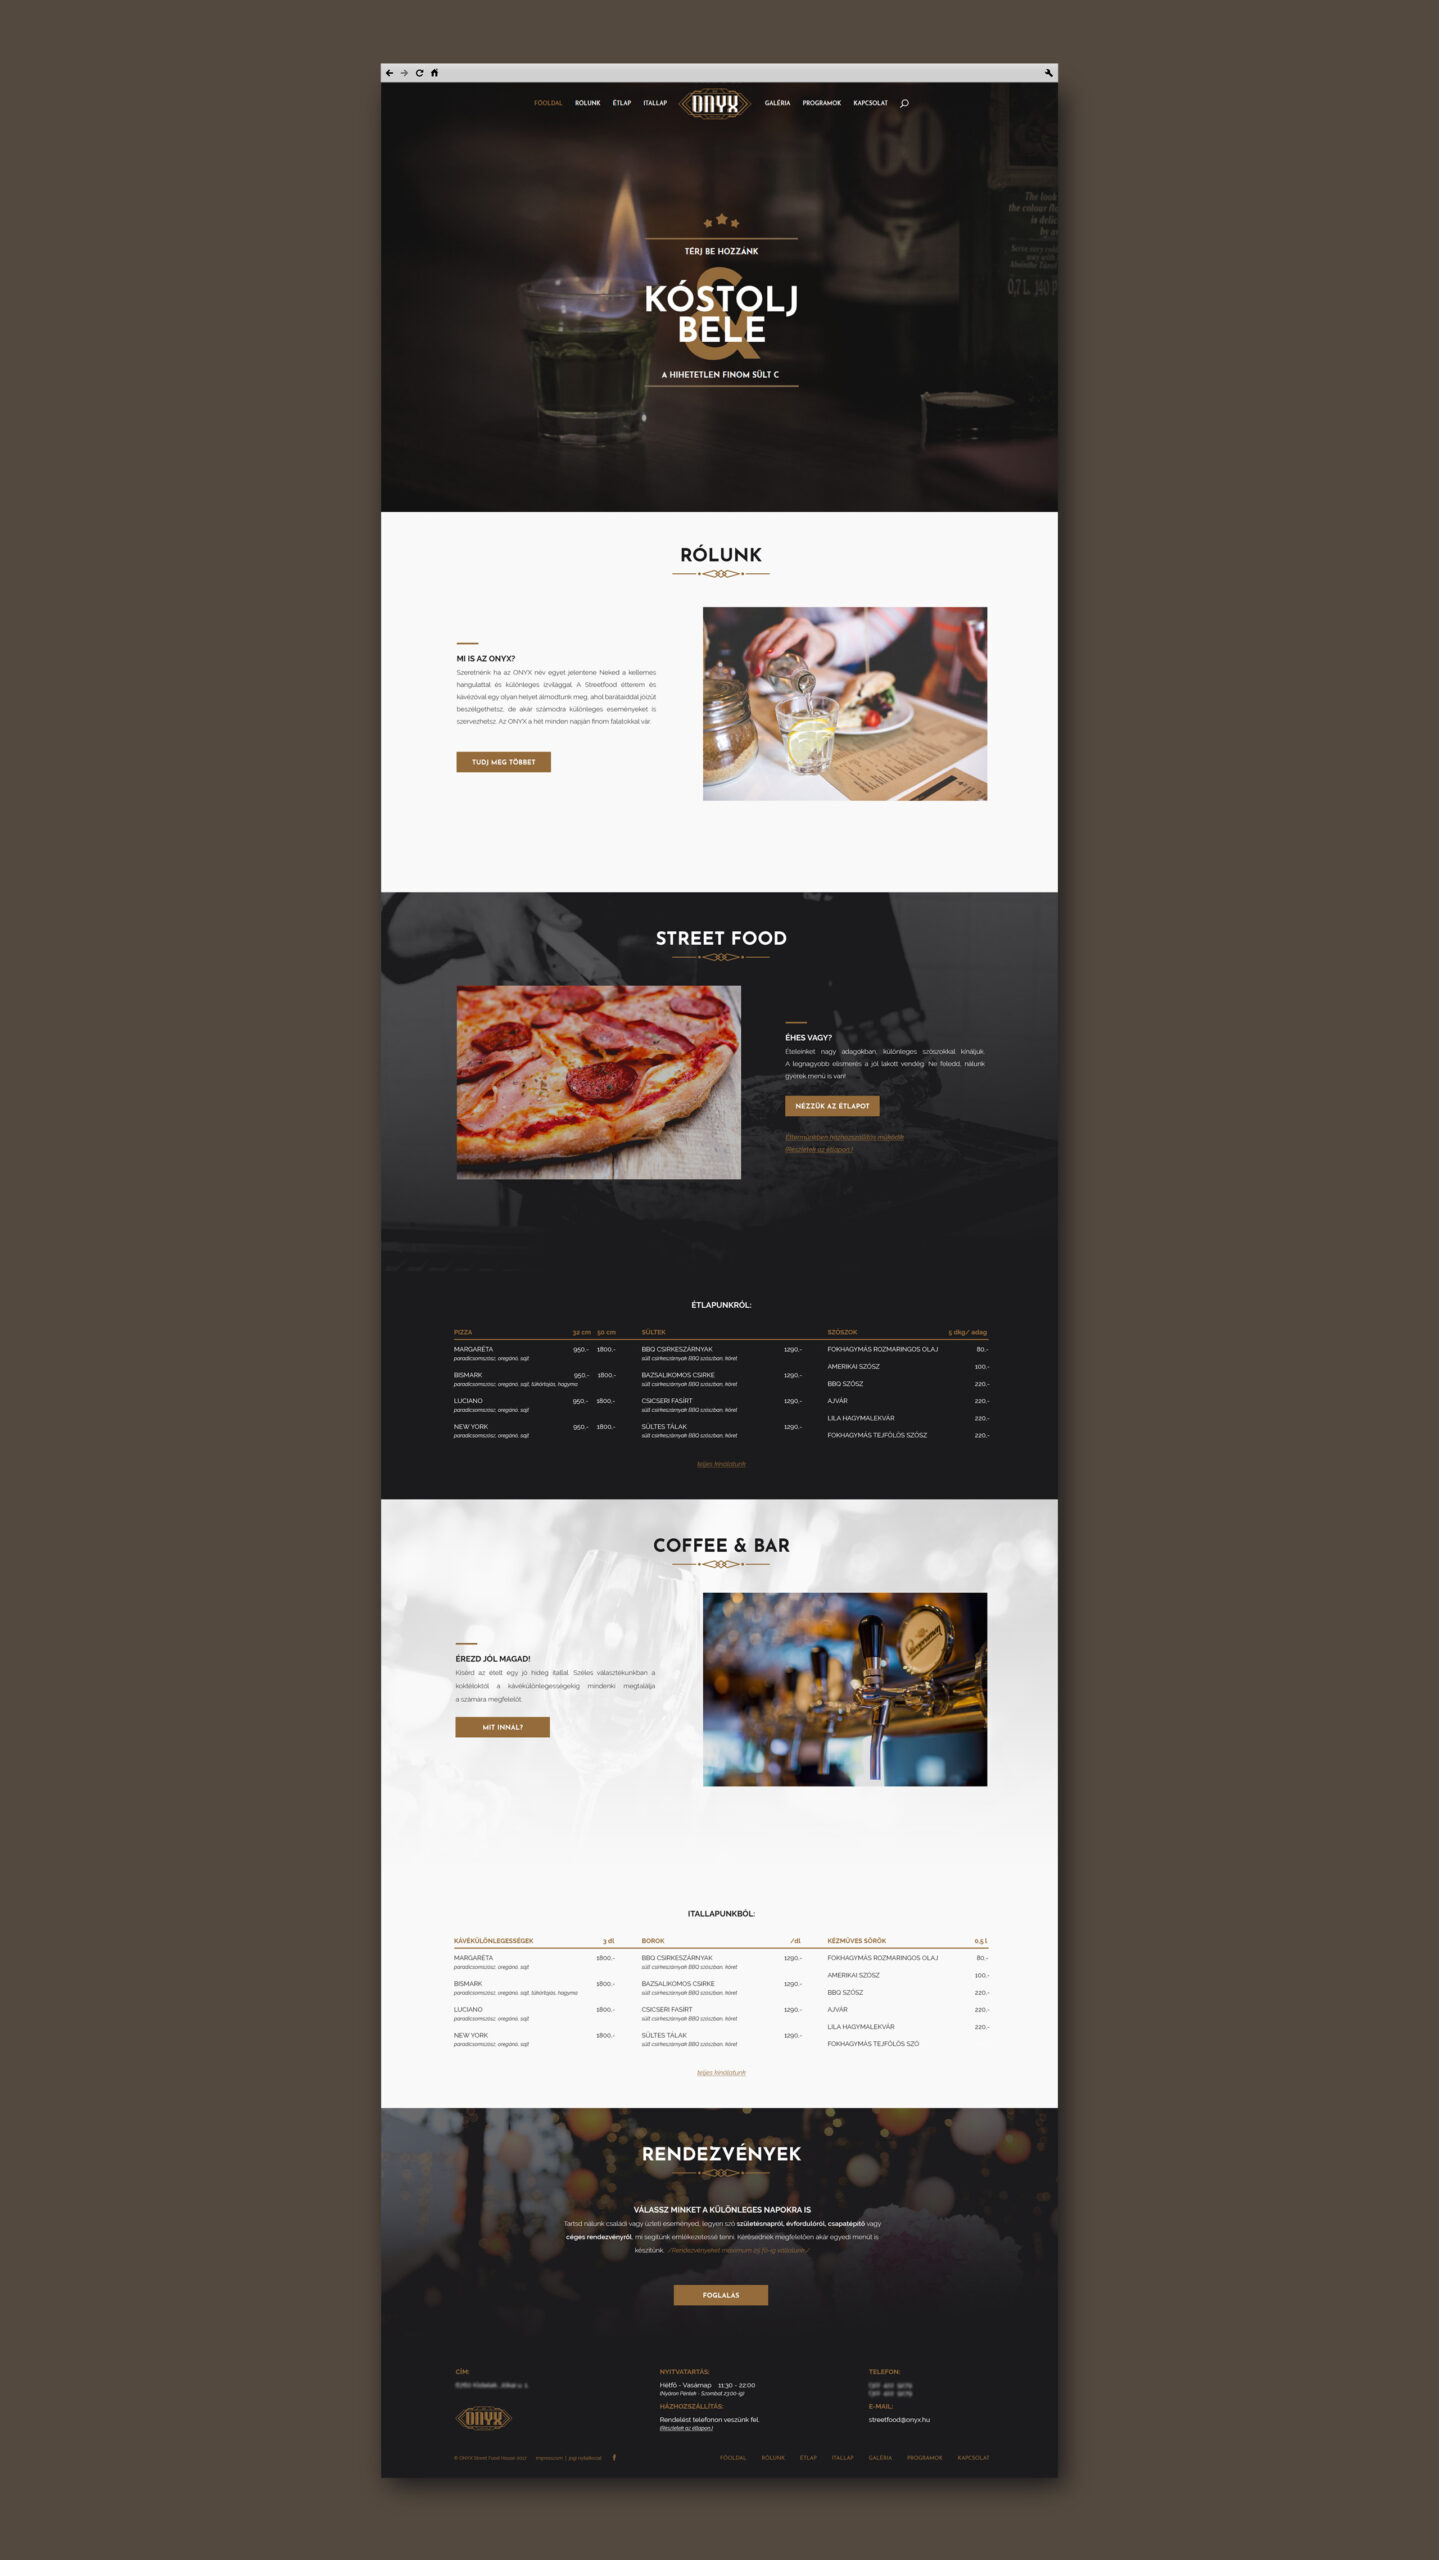 Egy streetfood étterem weblap főoldali designja.